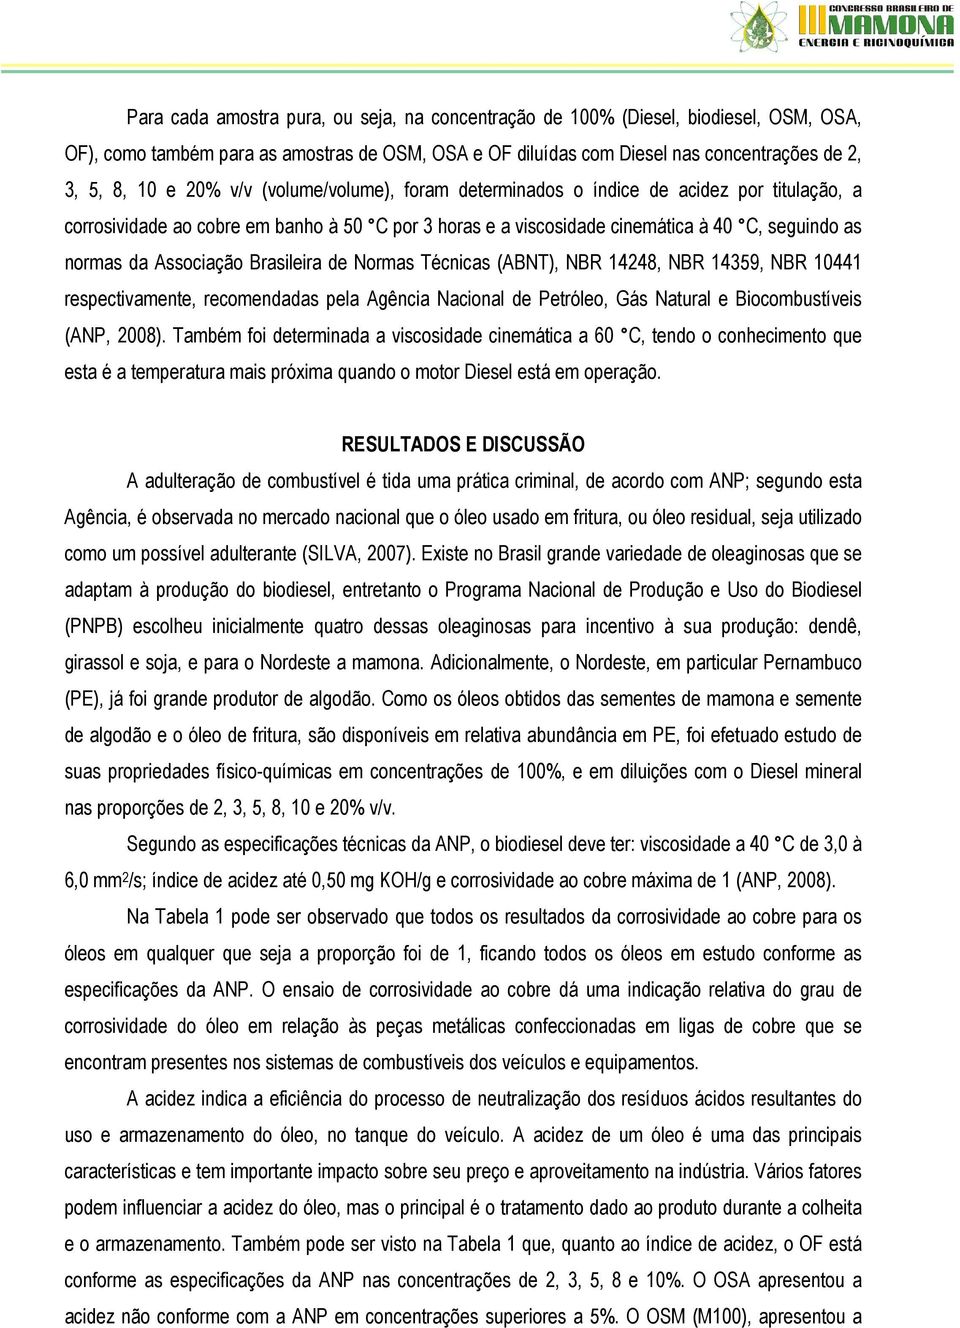 Brasileira de Normas Técnicas (ABNT), NBR 14248, NBR 14359, NBR 10441 respectivamente, recomendadas pela Agência Nacional de Petróleo, Gás Natural e Biocombustíveis (ANP, 2008).